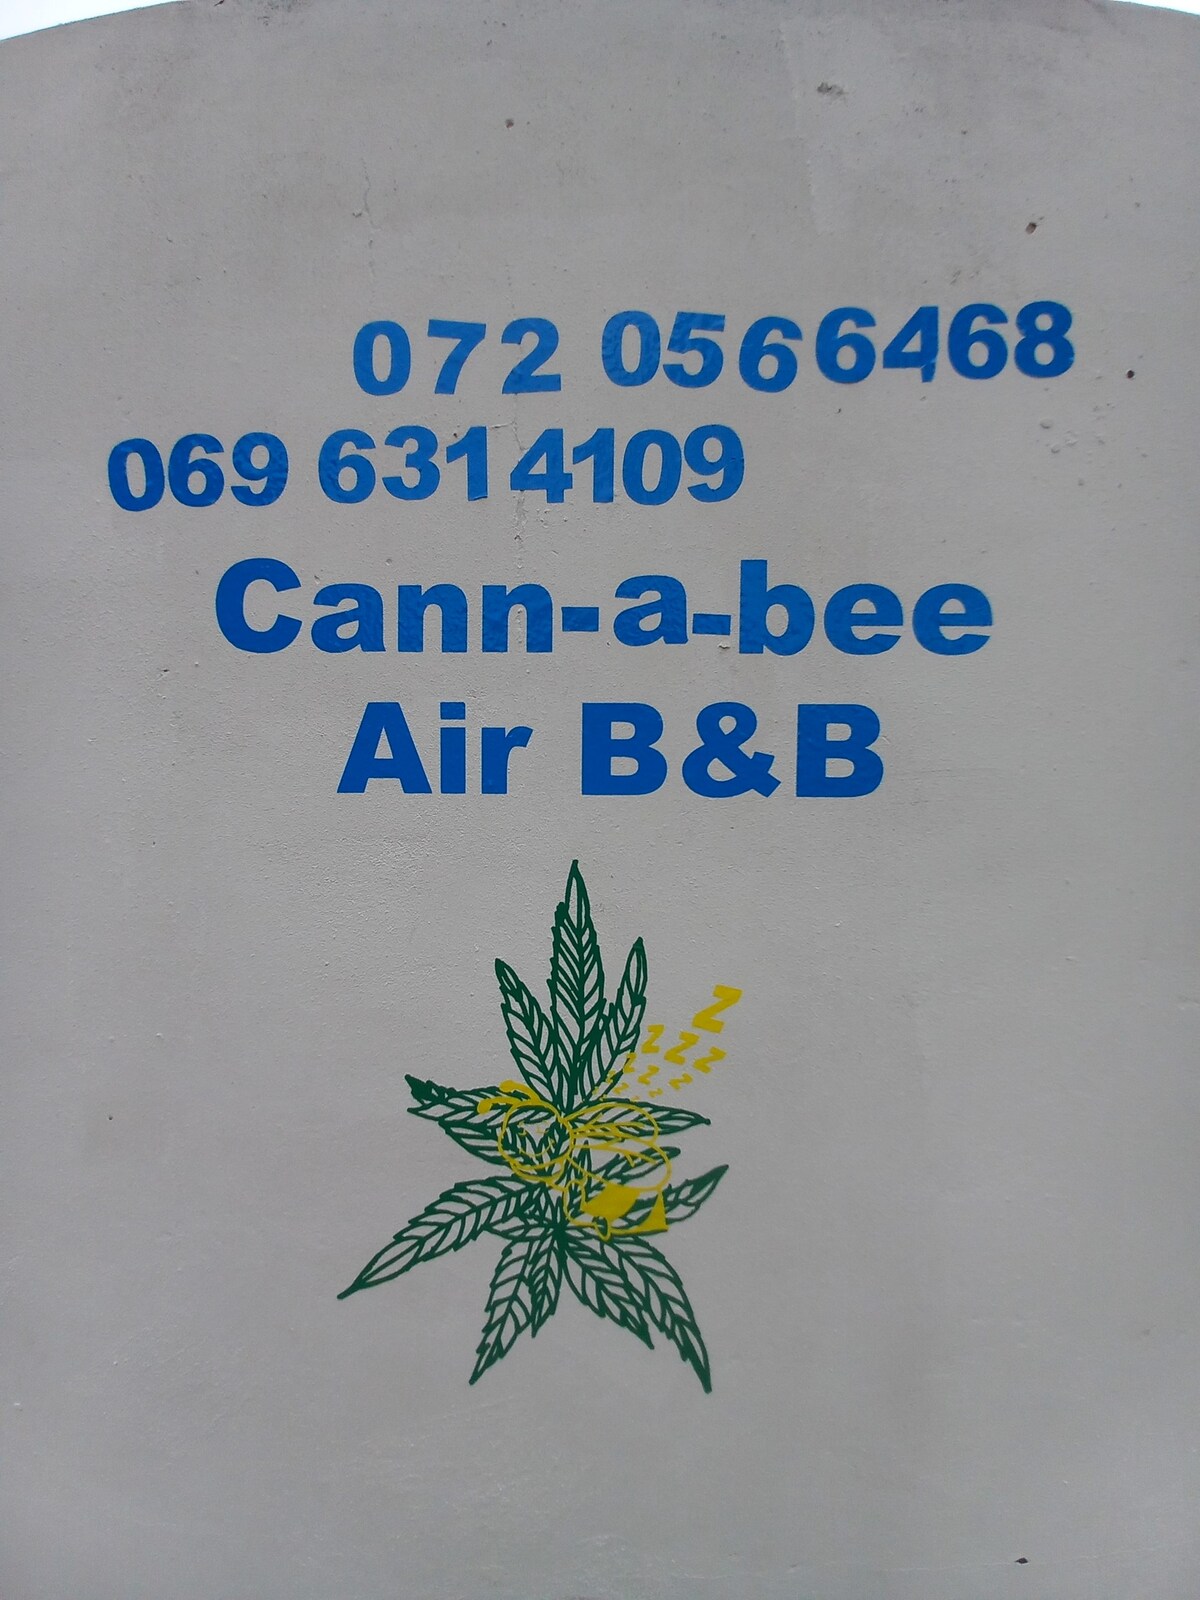 Swartkops Cann-a-bee Air B&B